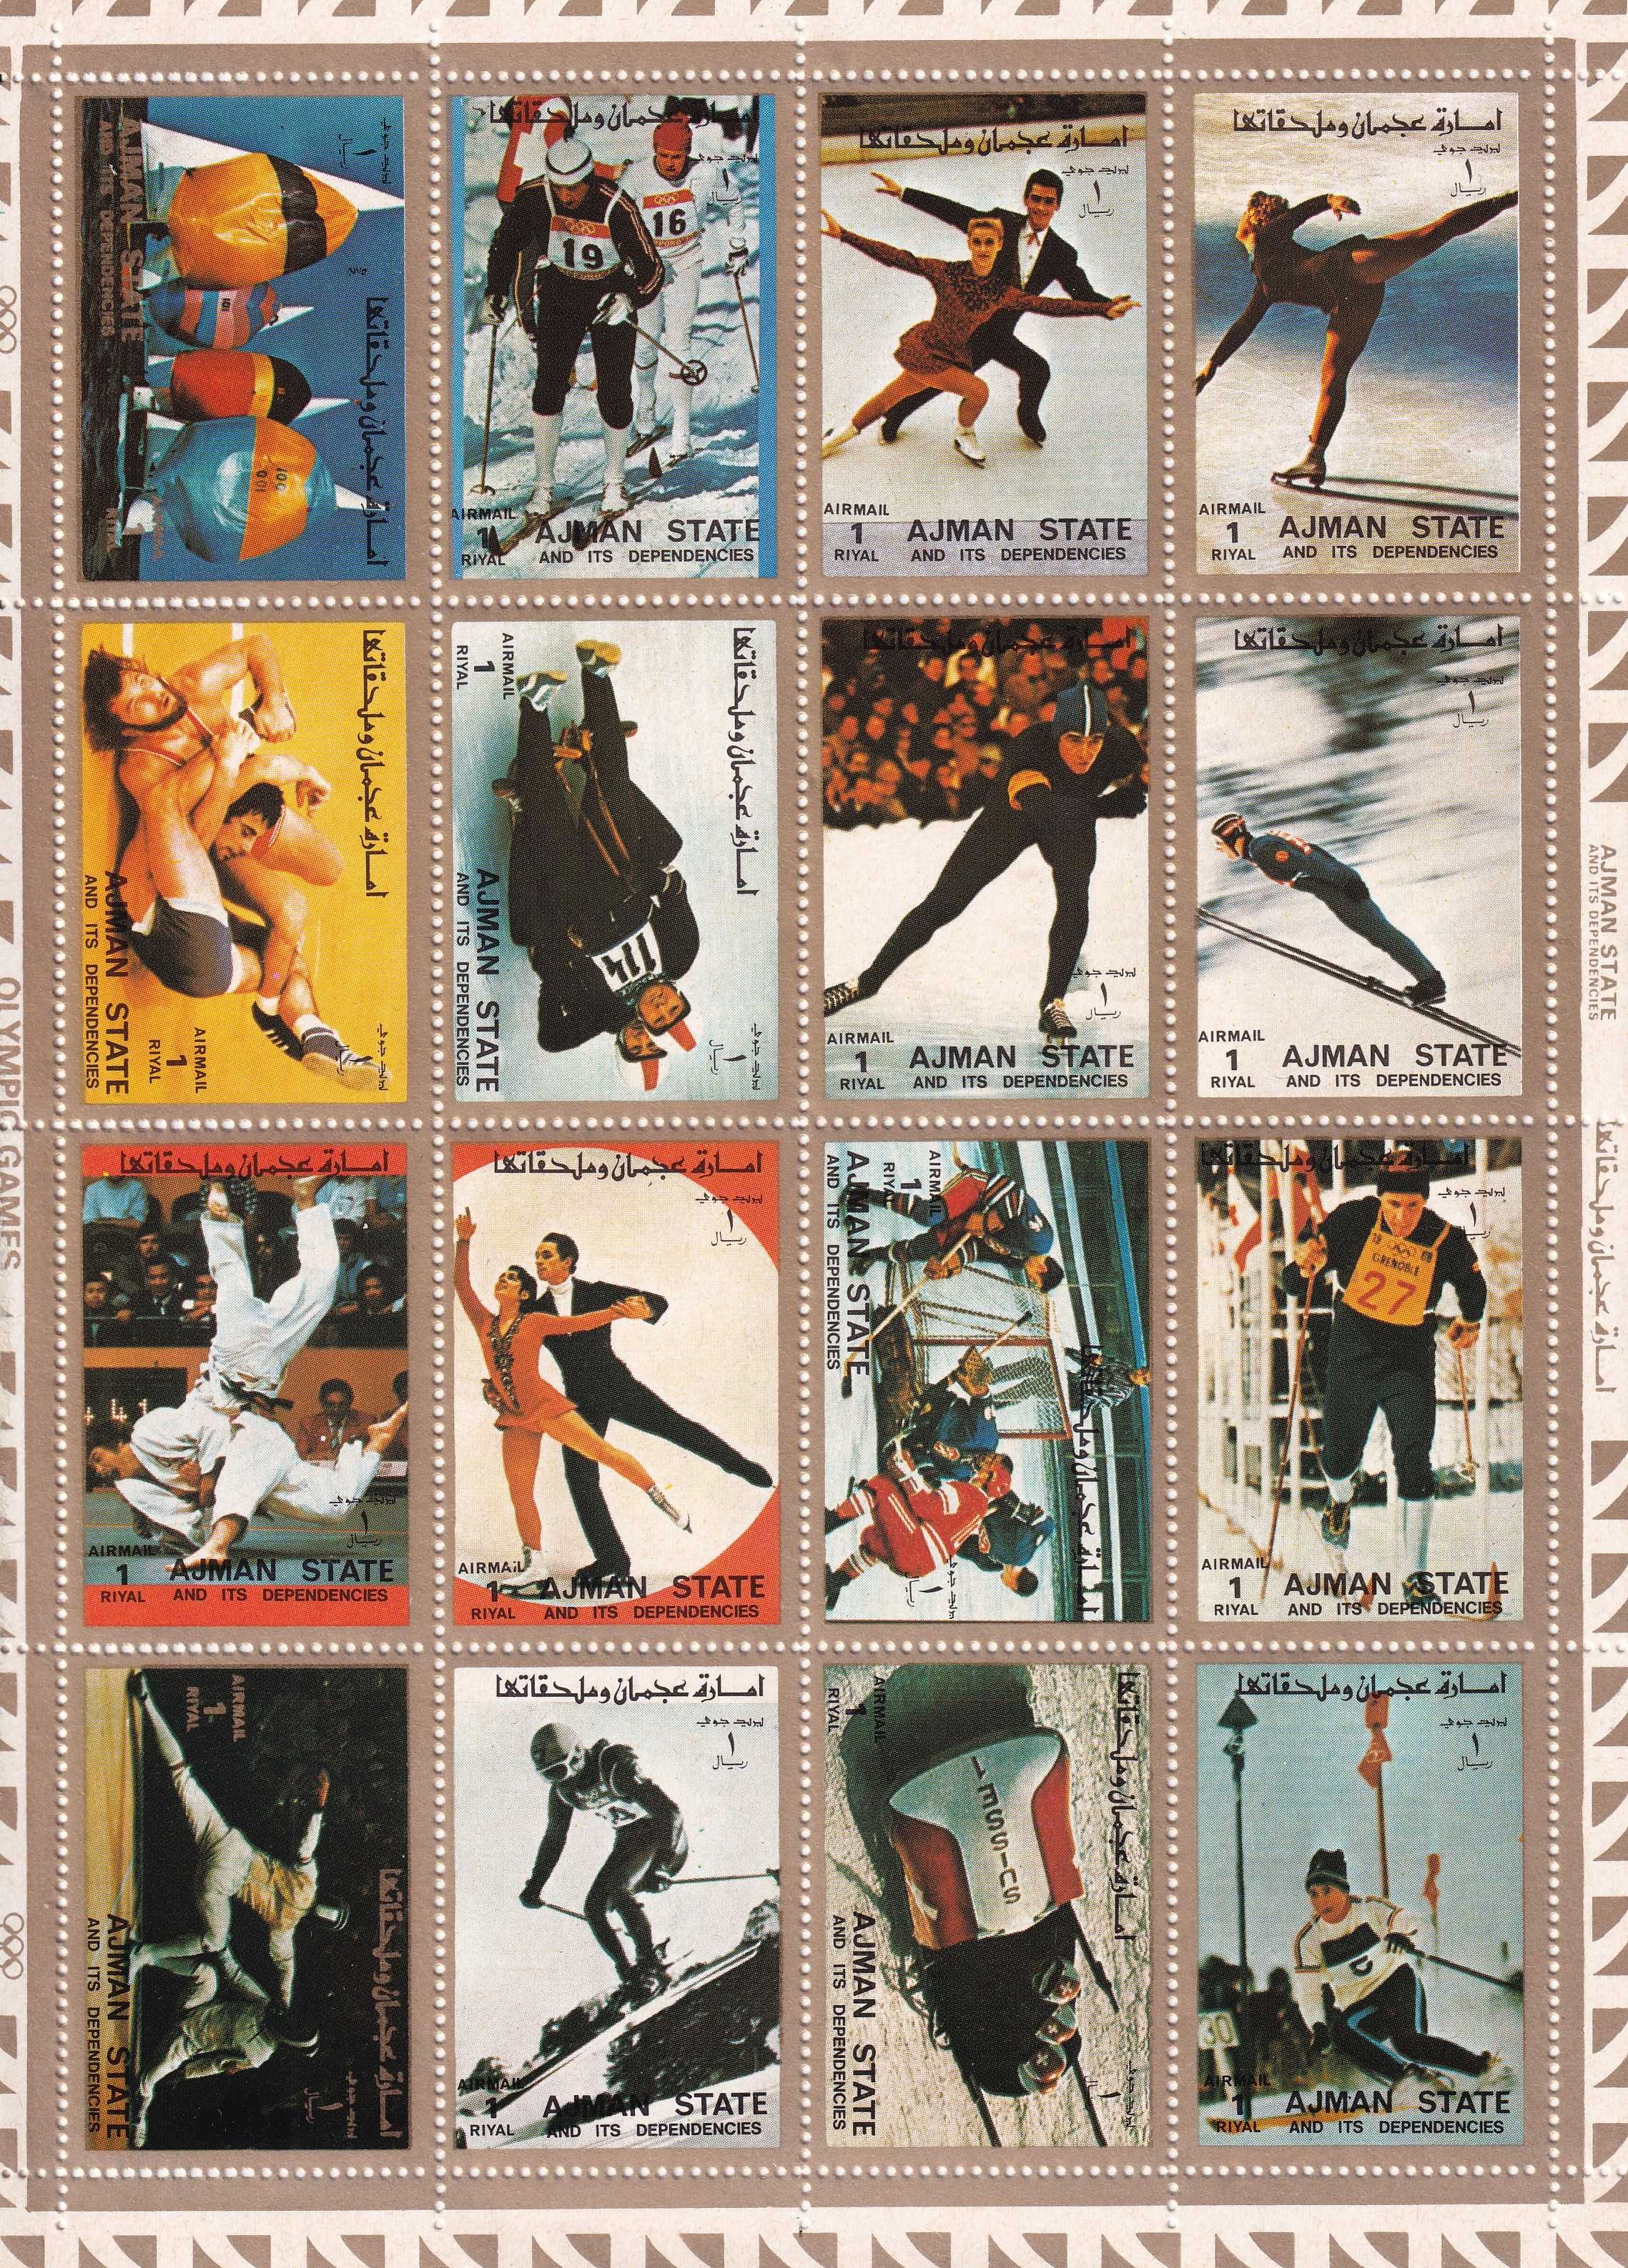 znaczki pocztowe - Ajman 1973 cena 8,90 zł kat.10€ - sport